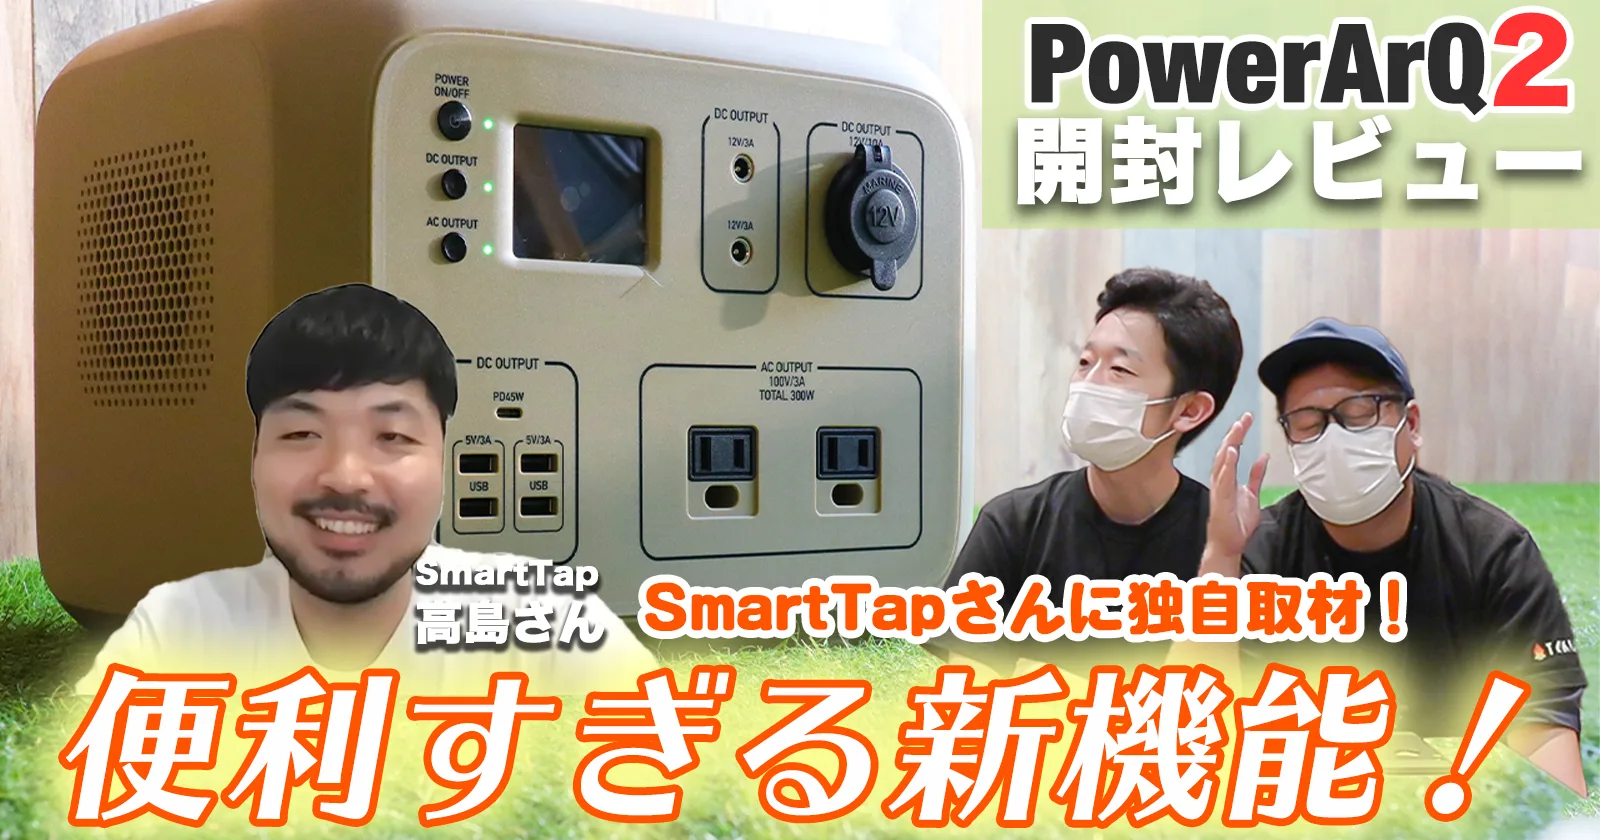 特別販売 SmartTapポータブル電源PowerArQ2 ブラック バッテリー/充電器